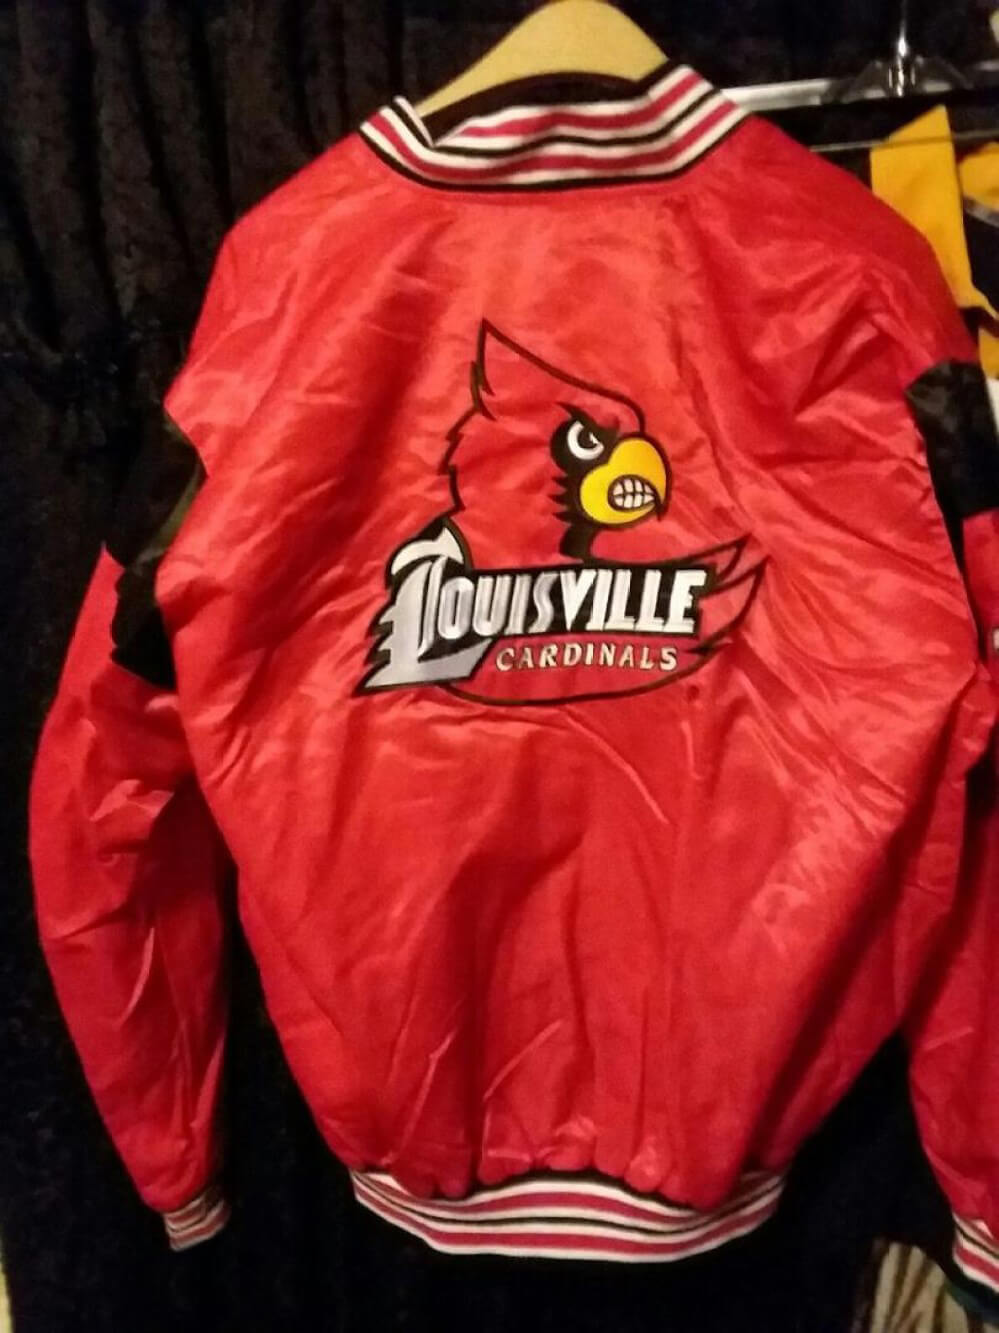 Vintage 90s Louisville Cardinals Navy Blue Satin Jacket - Maker of Jacket